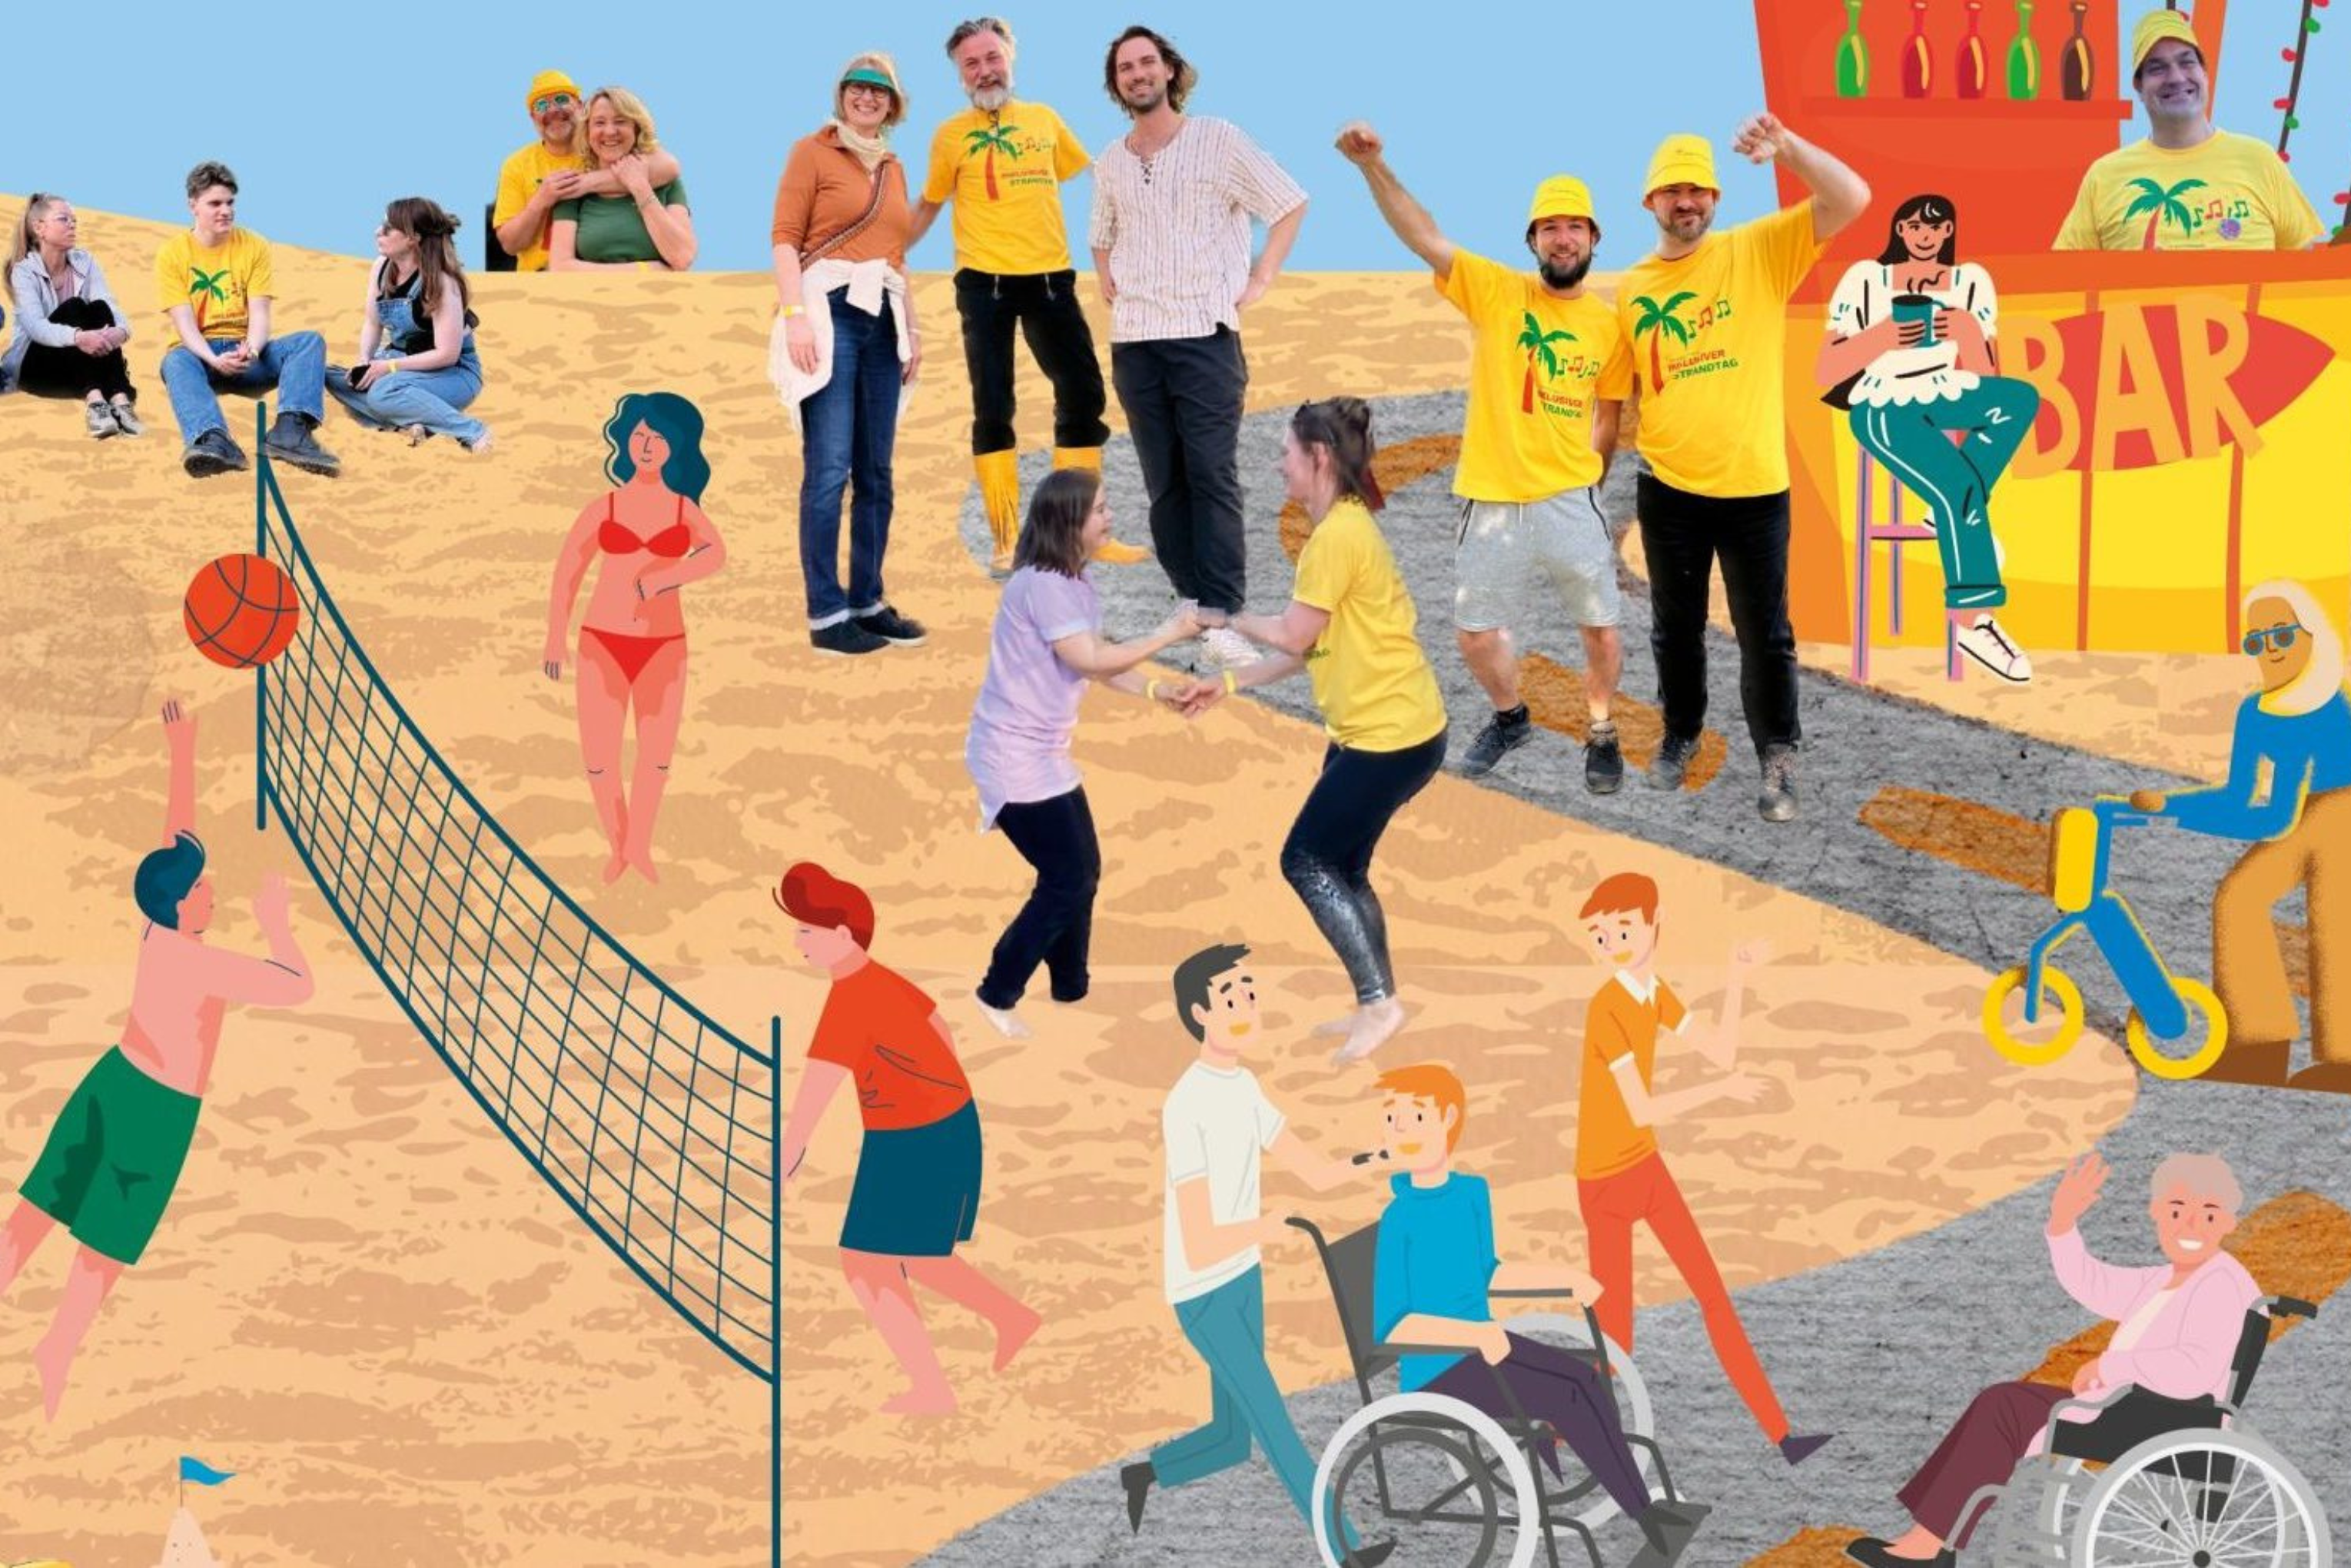 Eine Collage am Strand mit Beachvolleyball, Menschen, die im Sand sitzen und stehen. Einer Beachbar und Personen im Rollstuhl, die in die Kamera winken.